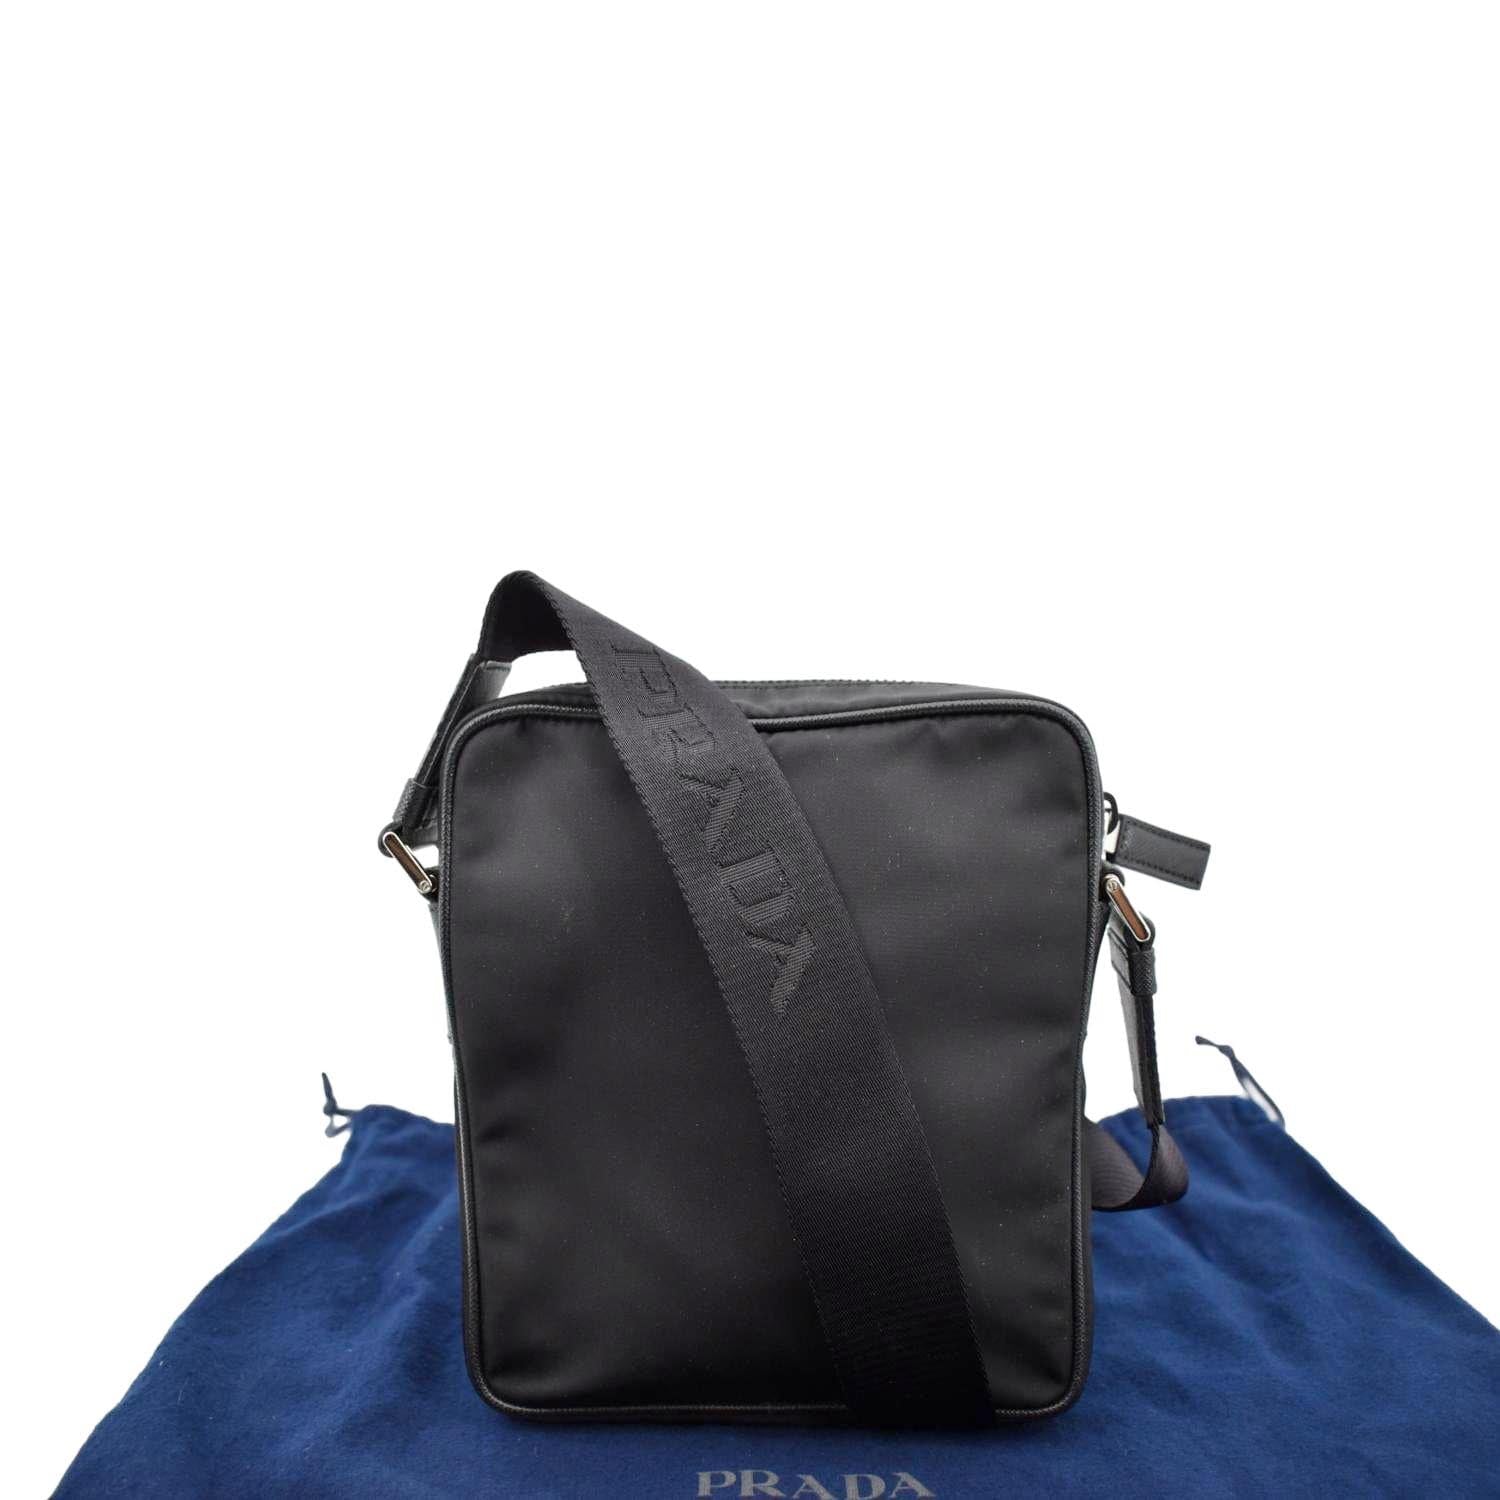 Prada Cross-Body & Messenger Bags for Women